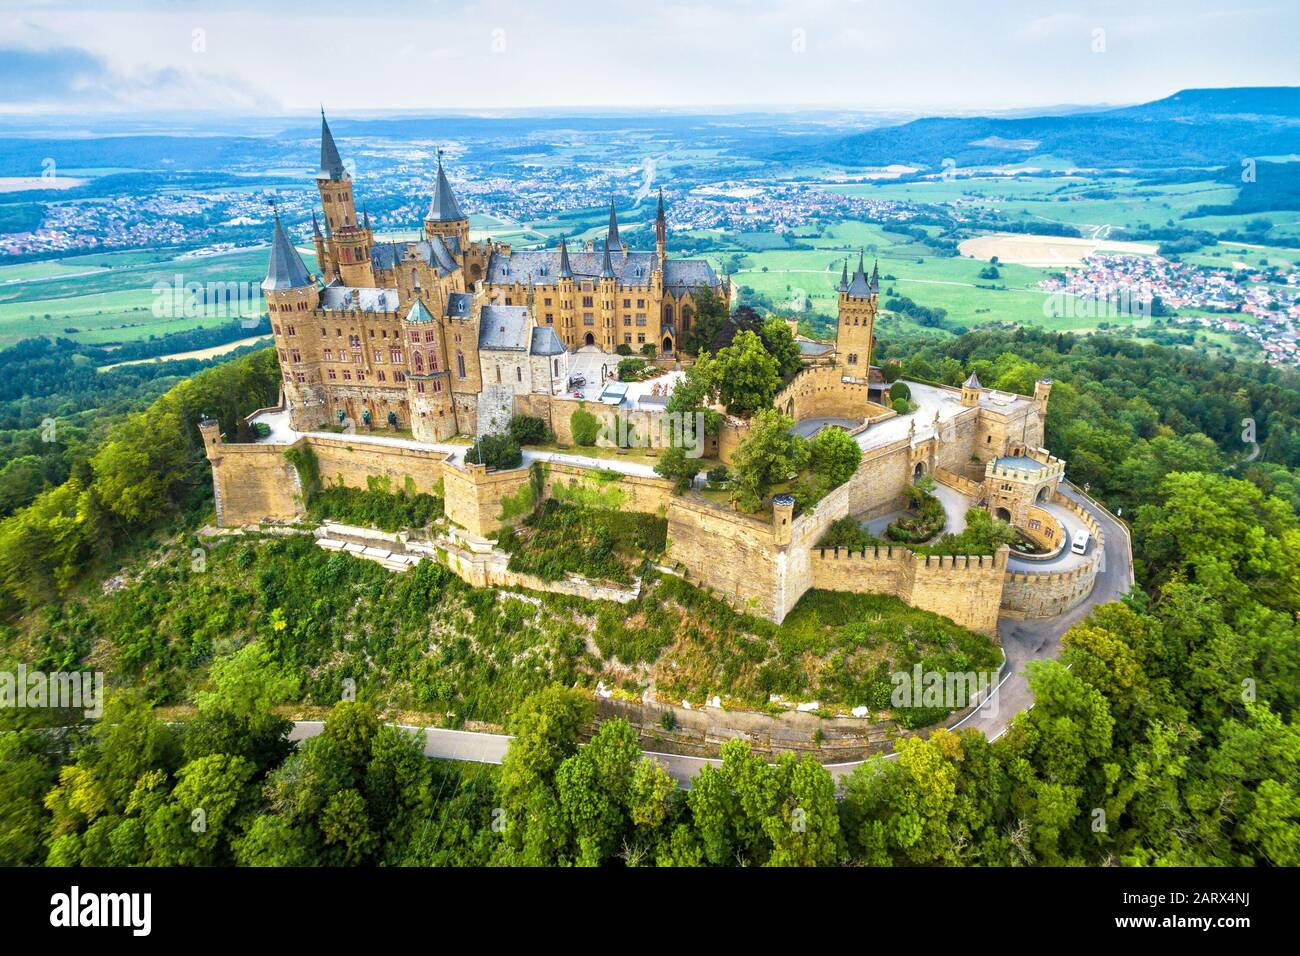 Burg von Hause aus auf dem Berg, Deutschland. Dieses Schloss ist ein berühmtes Wahrzeichen in Stuttgart-Umgebung. Luftpanorama von Burg Hohenzollern im Sommer Stockfoto